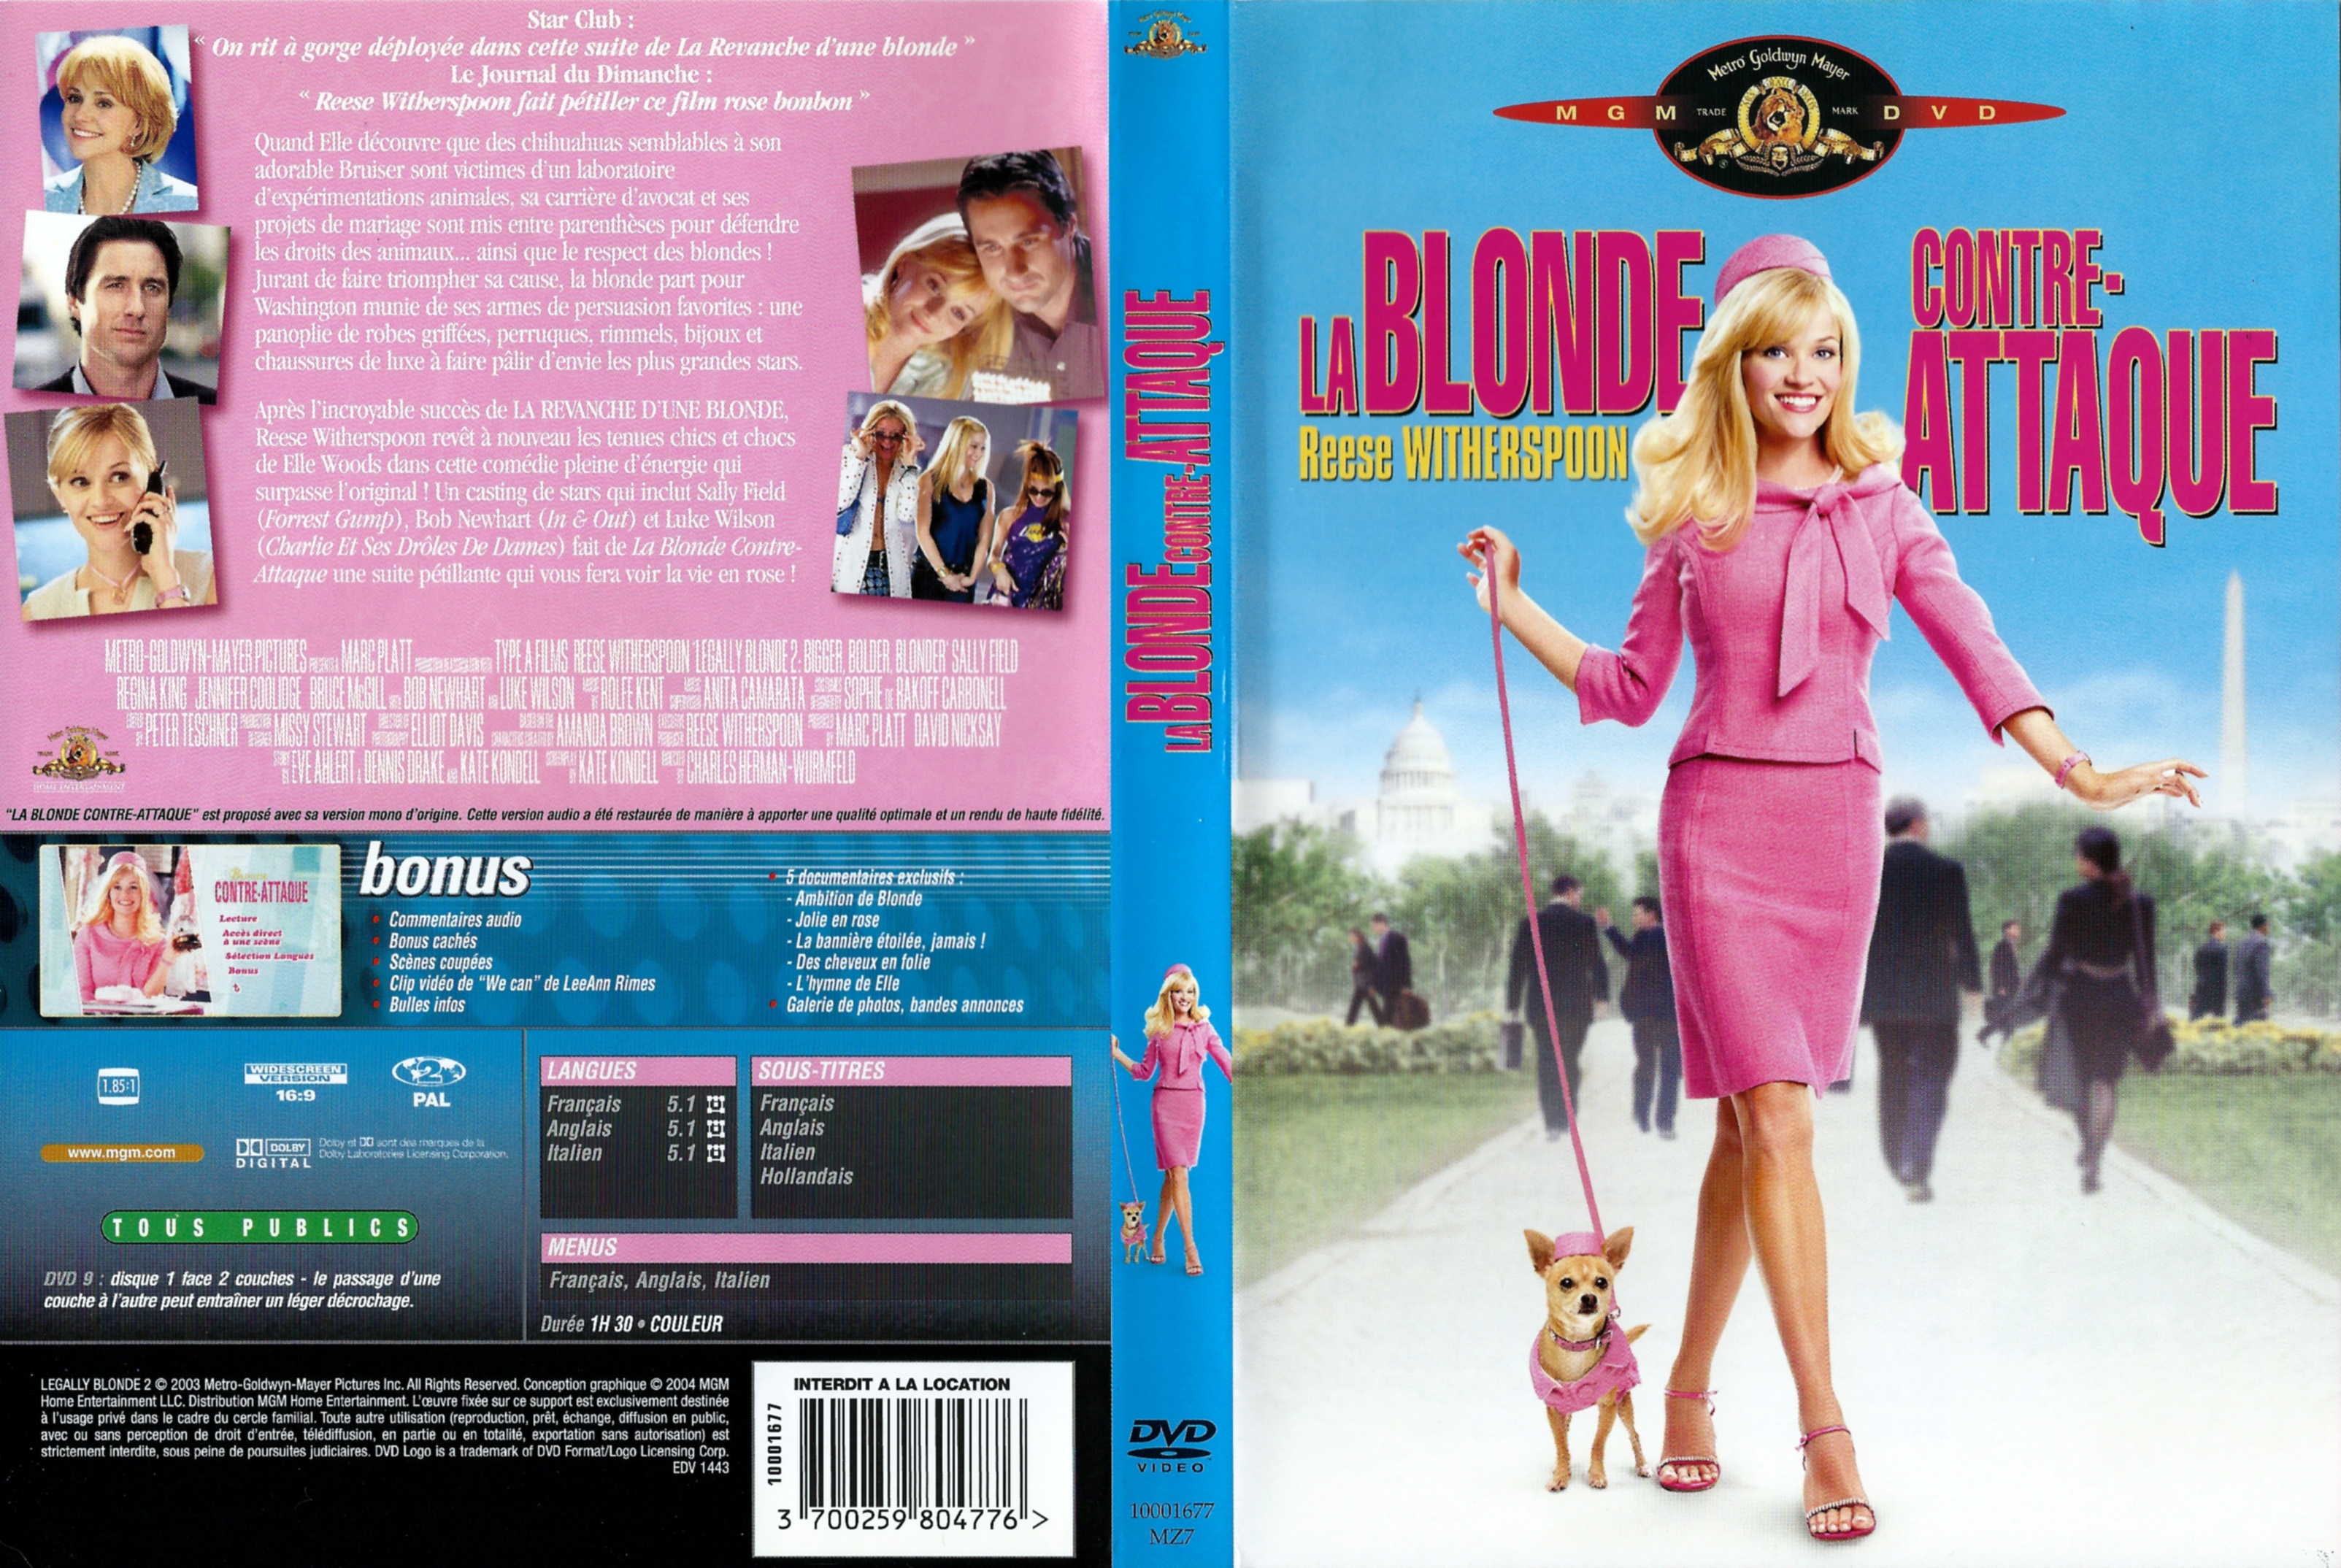 Jaquette DVD La blonde contre-attaque v2